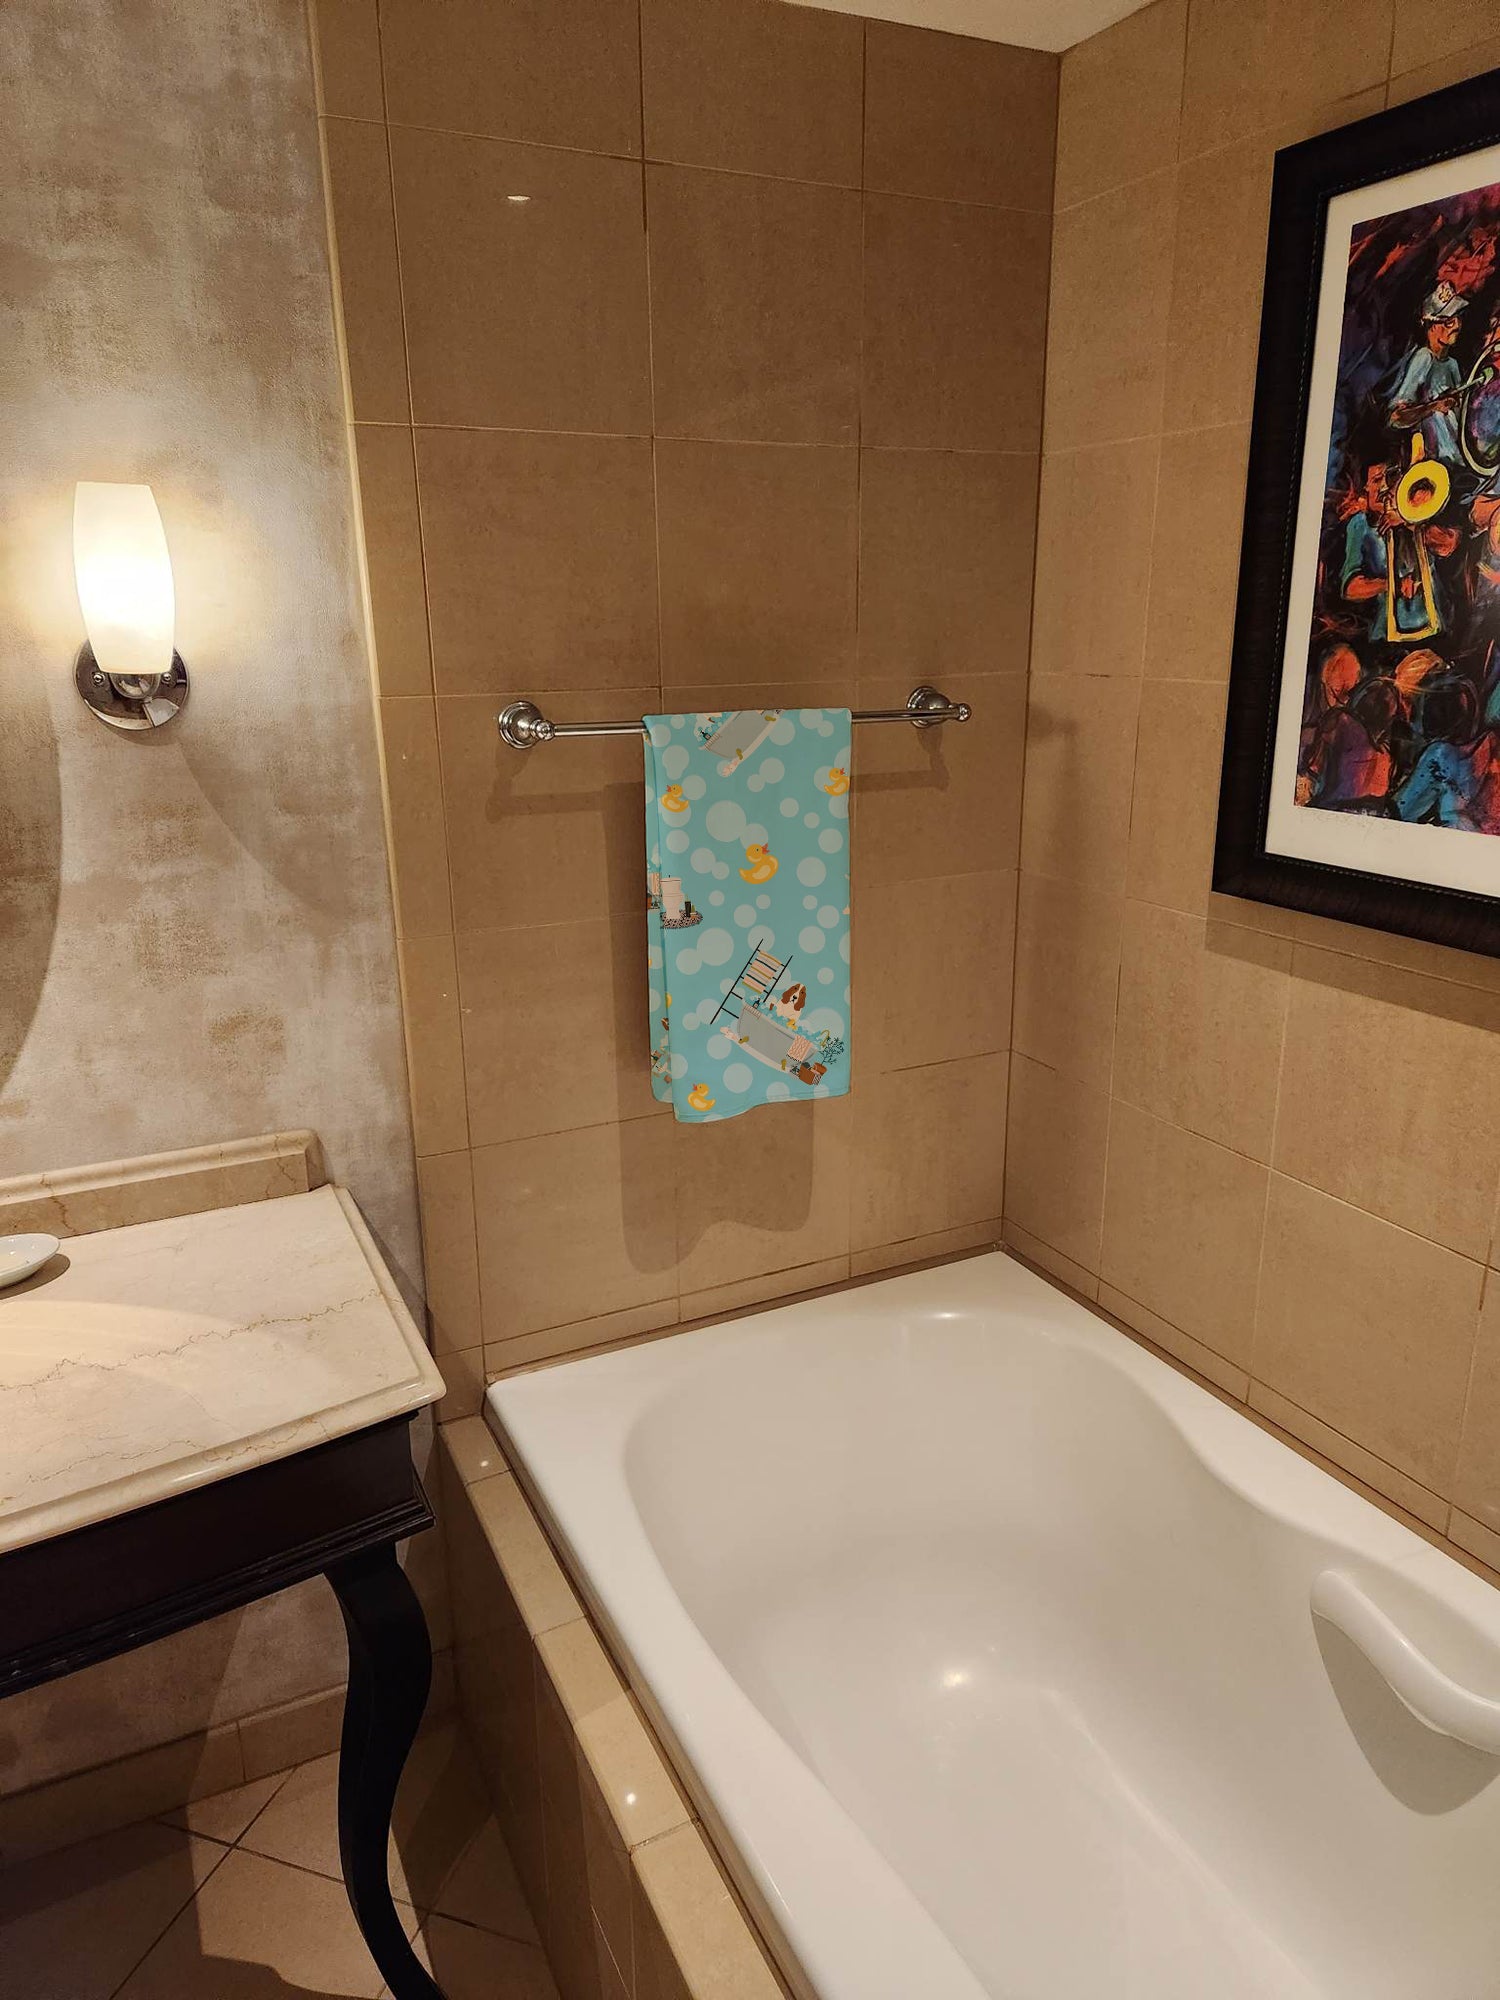 Buy this Basset Hound in Bathtub Bath Towel Large